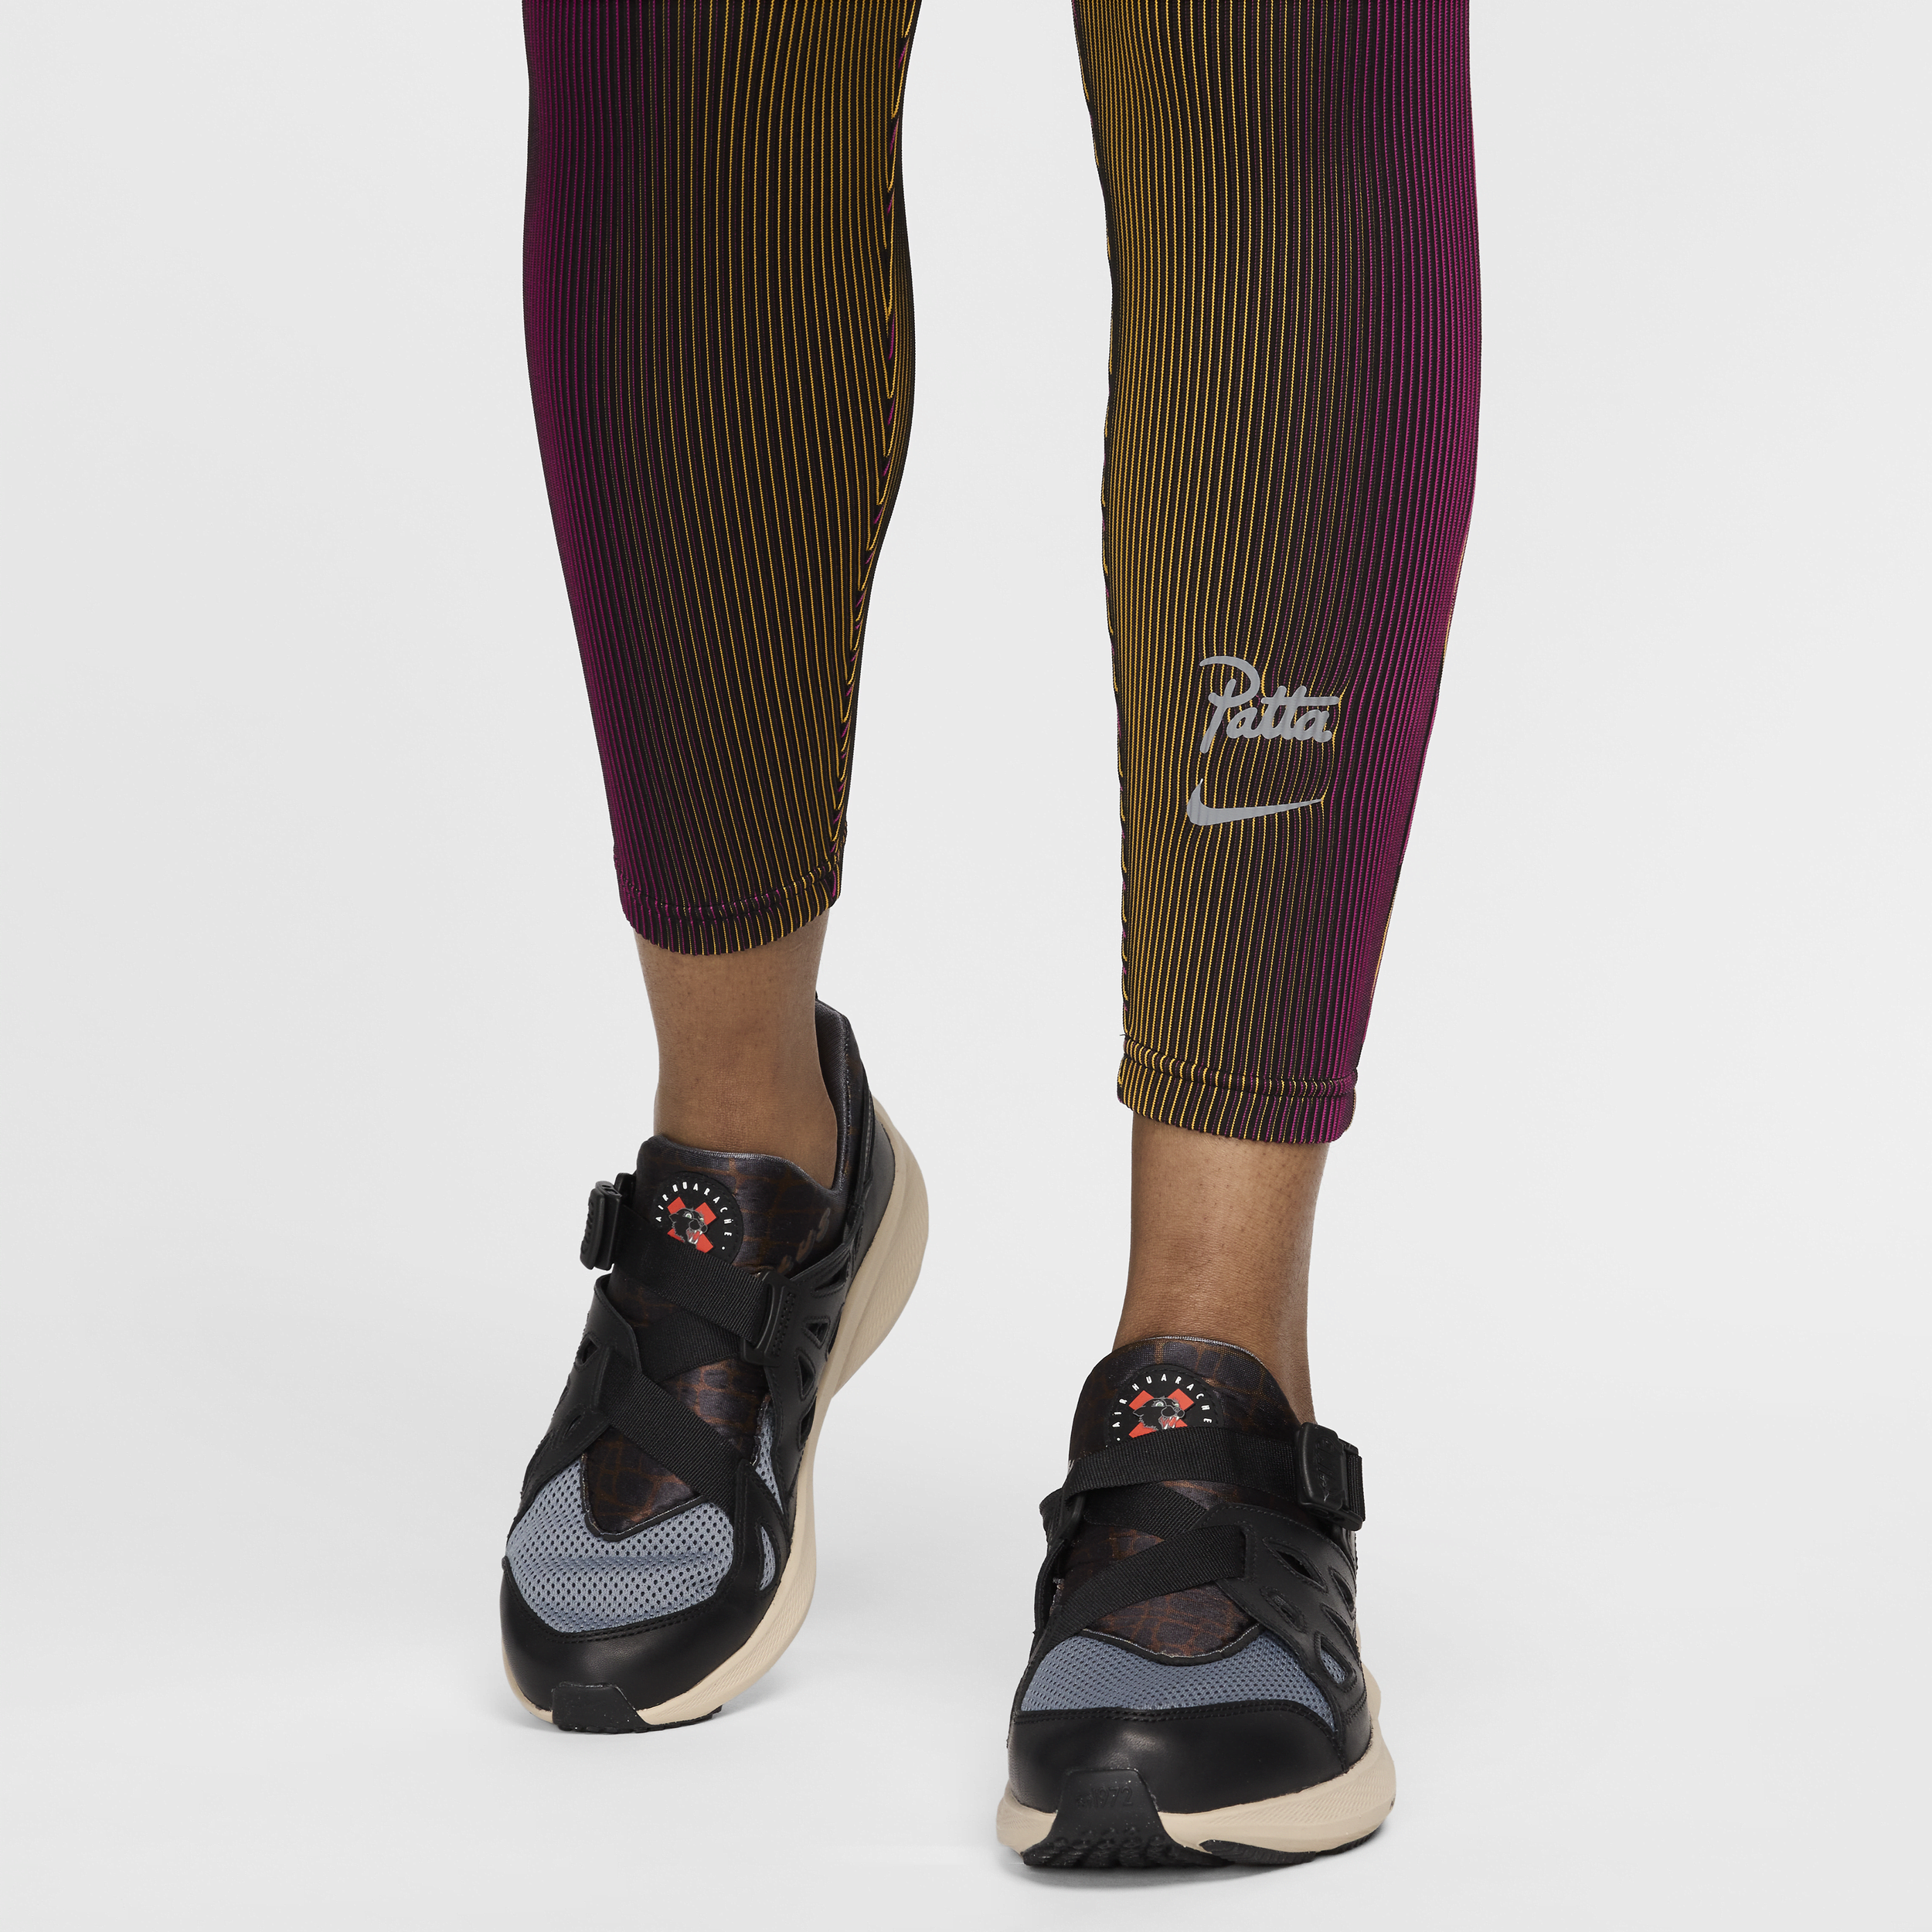 Nike x Patta Running Team legging voor heren Roze